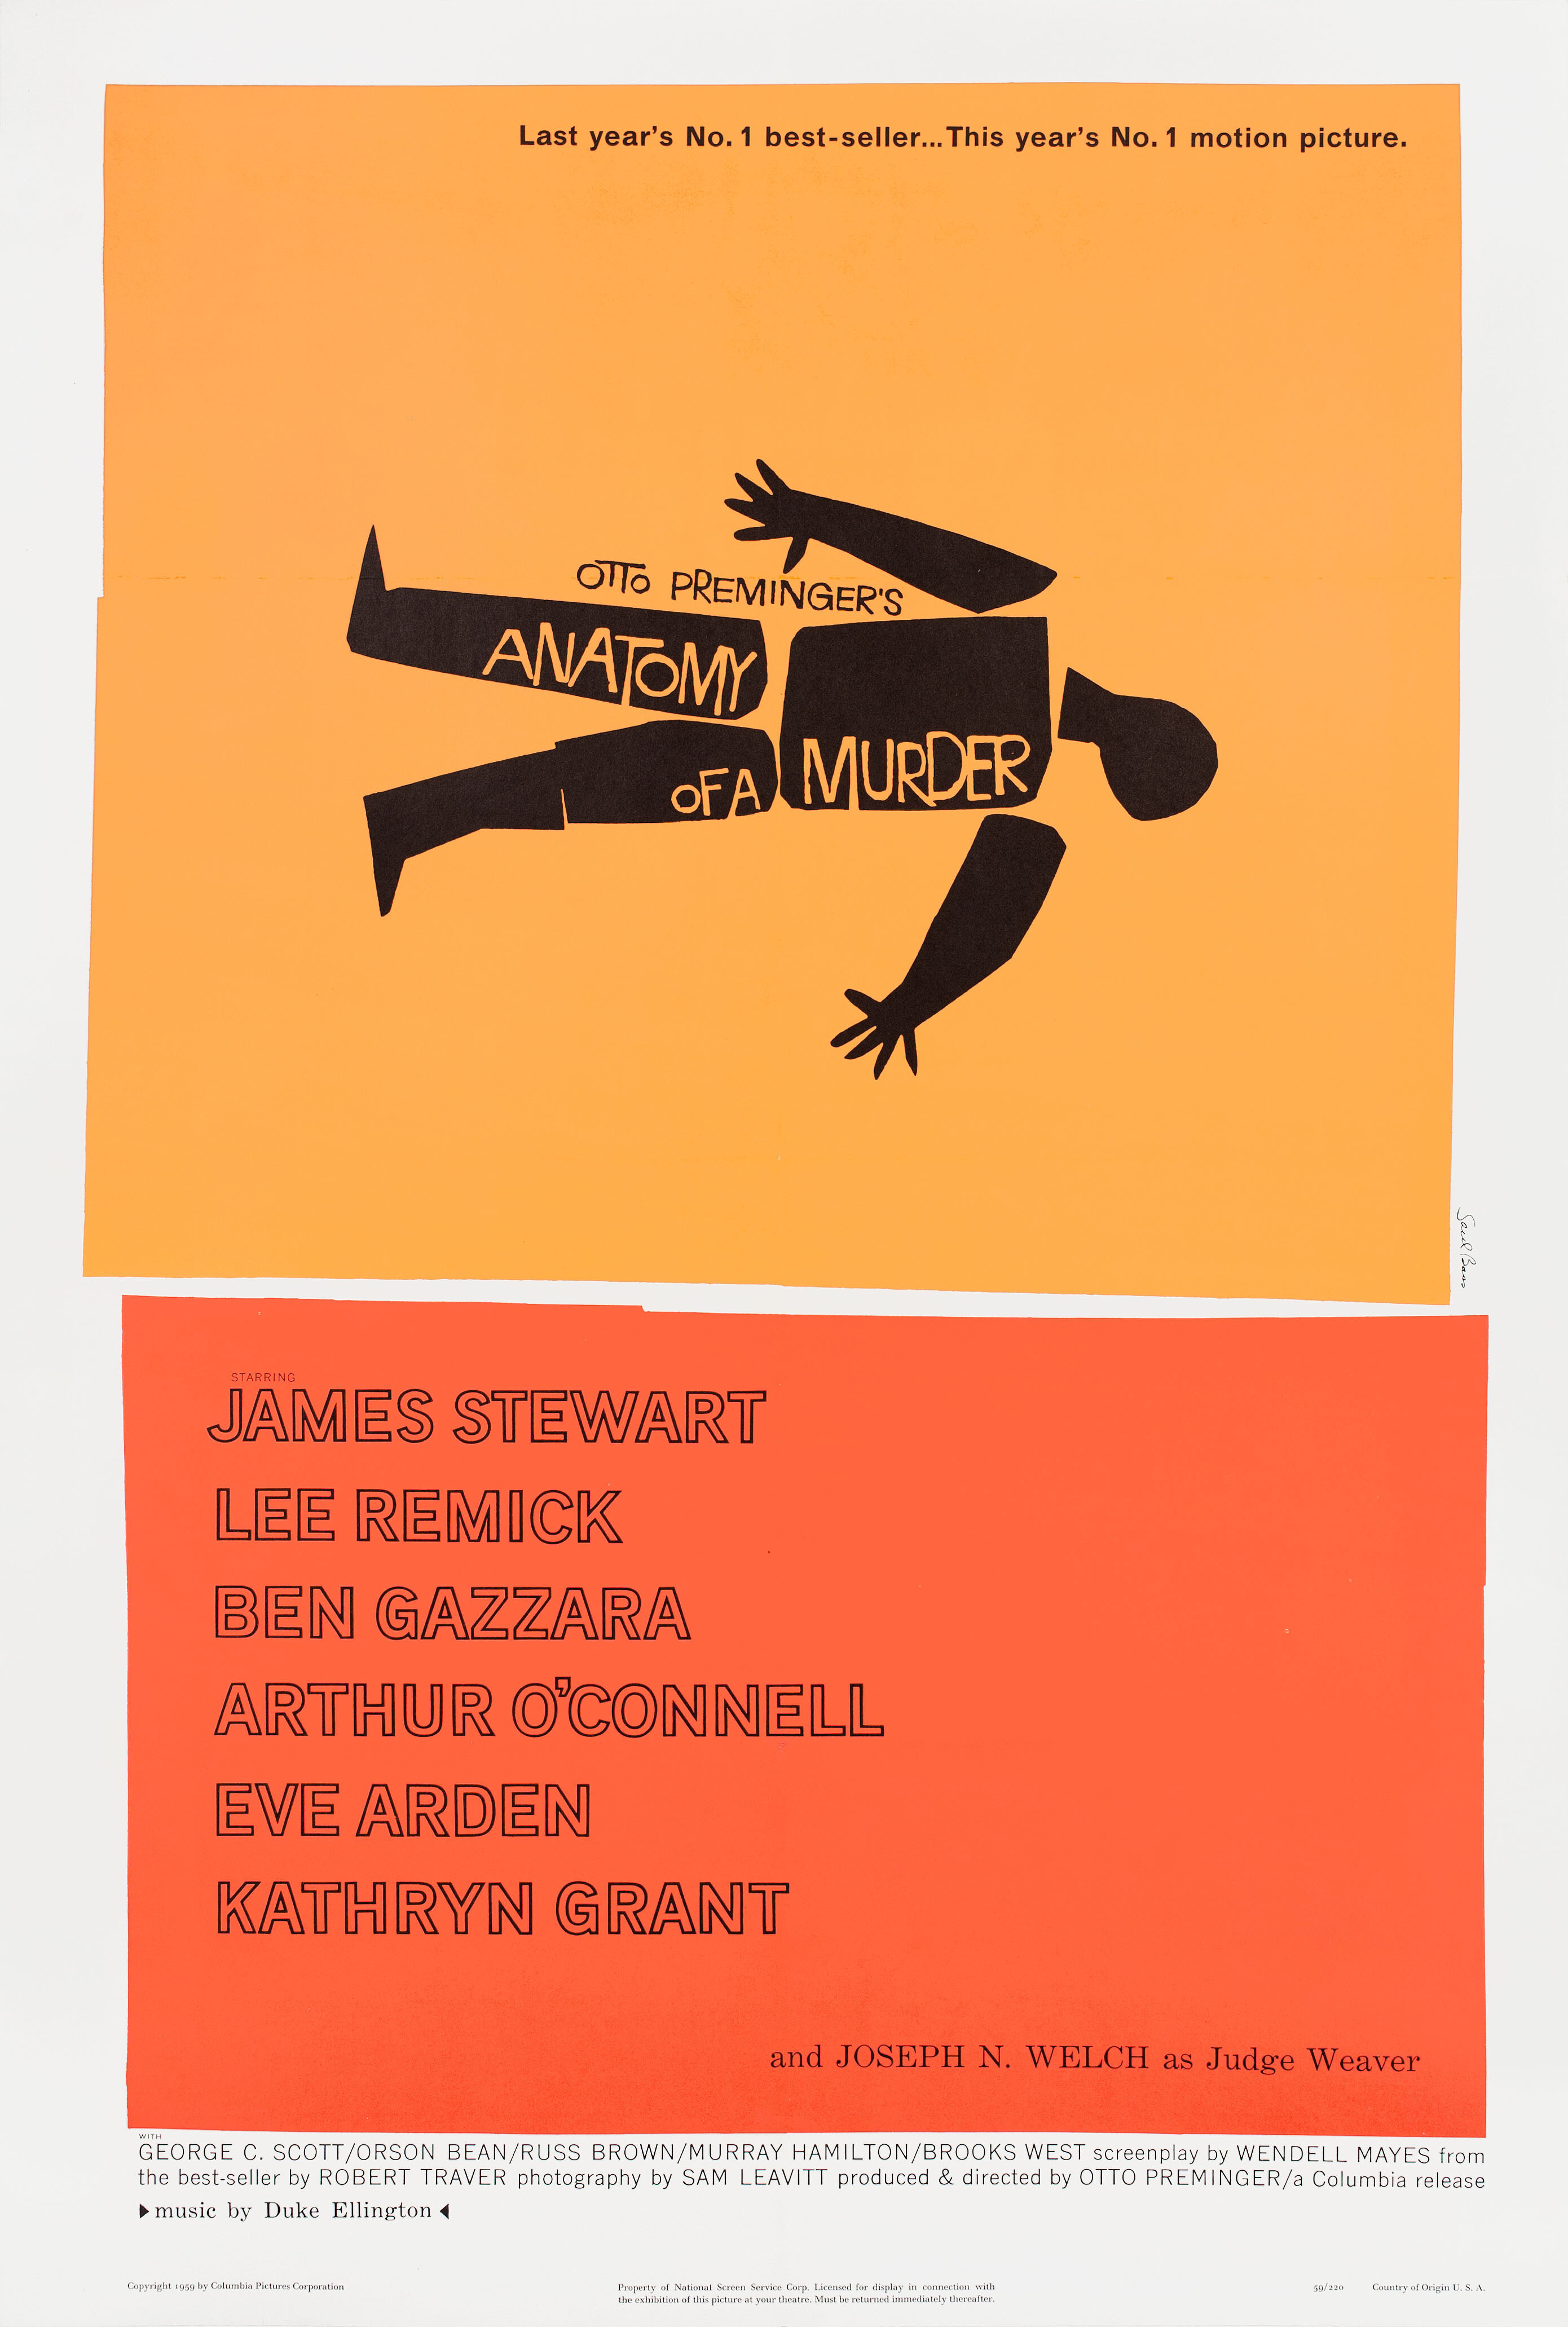 Анатомия убийства (Anatomy of a Murder), 1959 год, режиссёр Отто Премингер, американский постер к фильму, автор Сол Басс (графический дизайн, 1959 год)_1